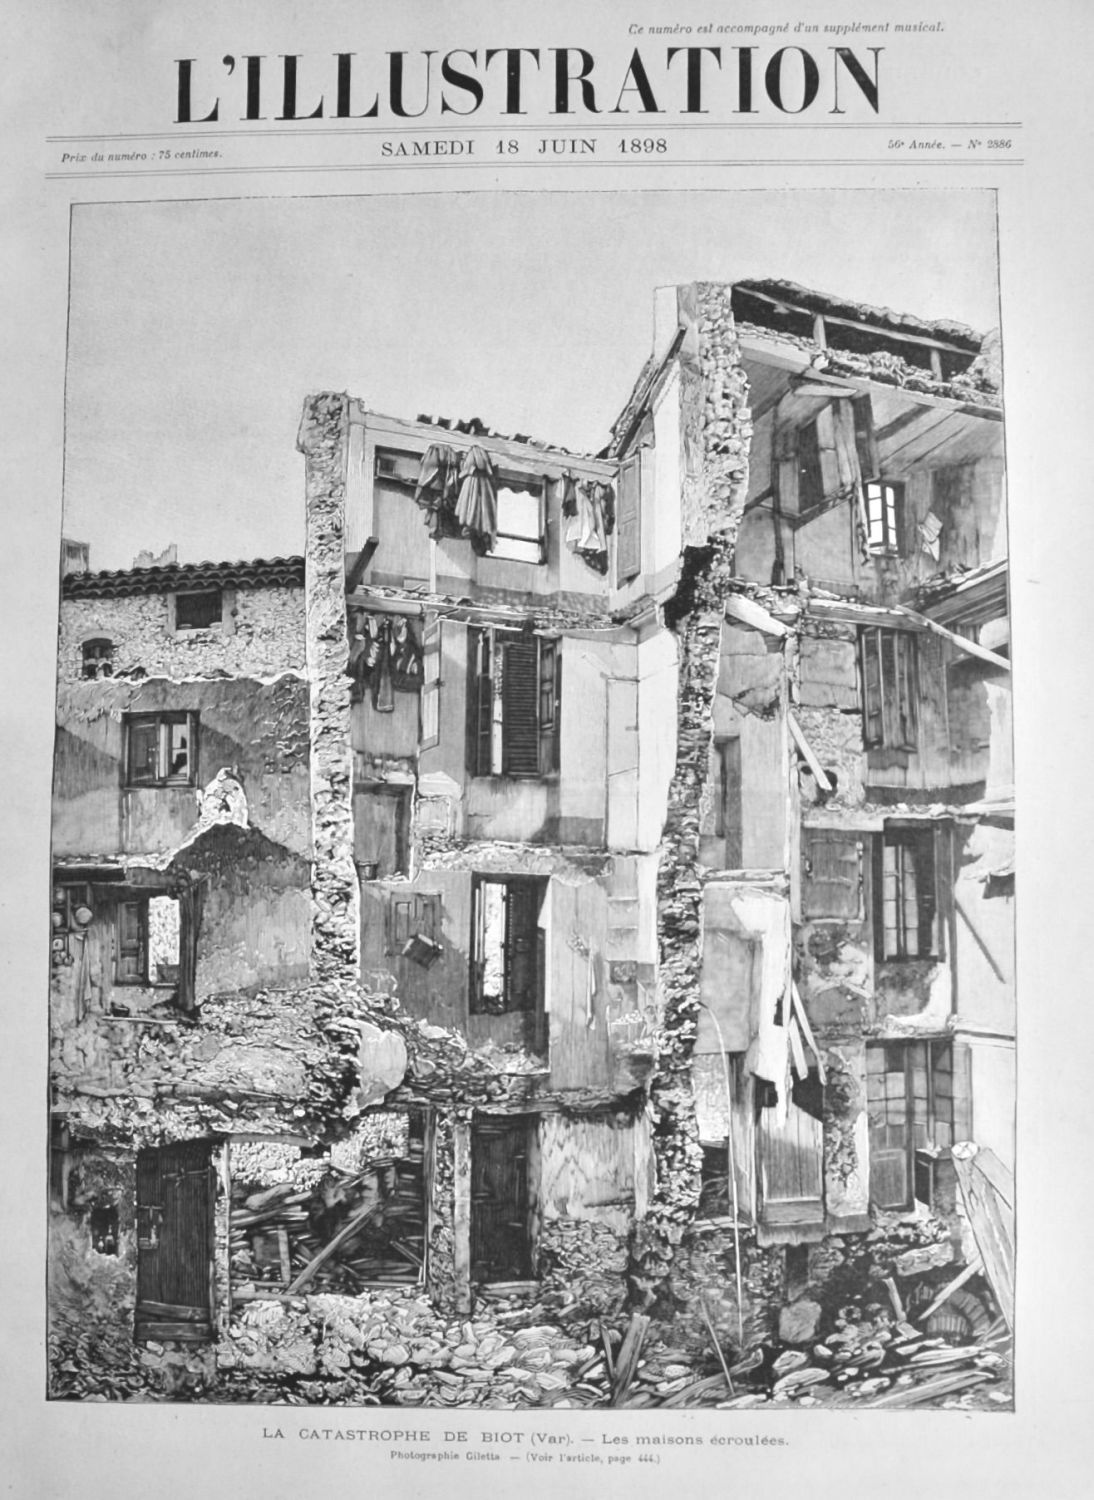 La Catastrophe De Biot. -Les maisons ecroulees.  1898.